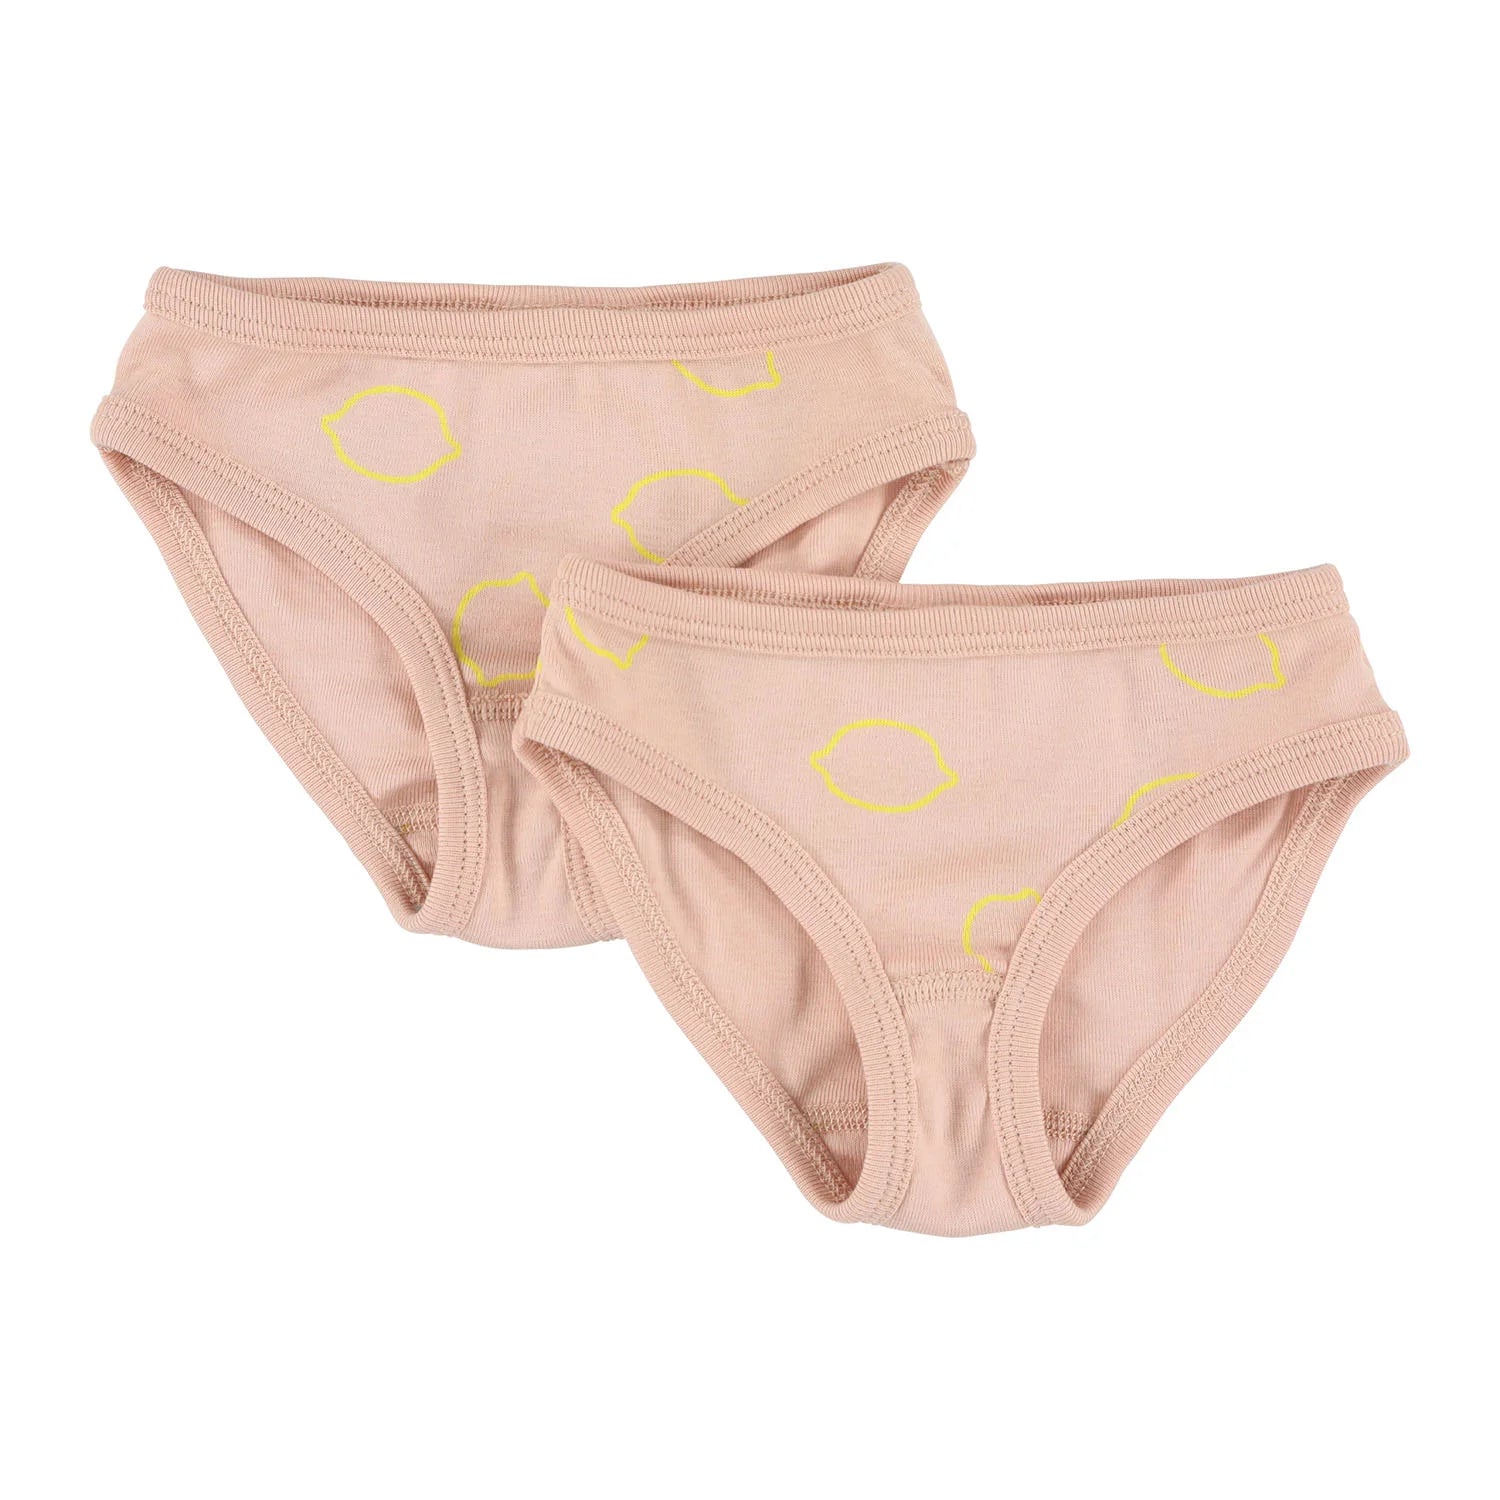 An image of Kids Briefs - Kids Underwear - Briefs 2-pack 4y - Lemon Squash | Trixie